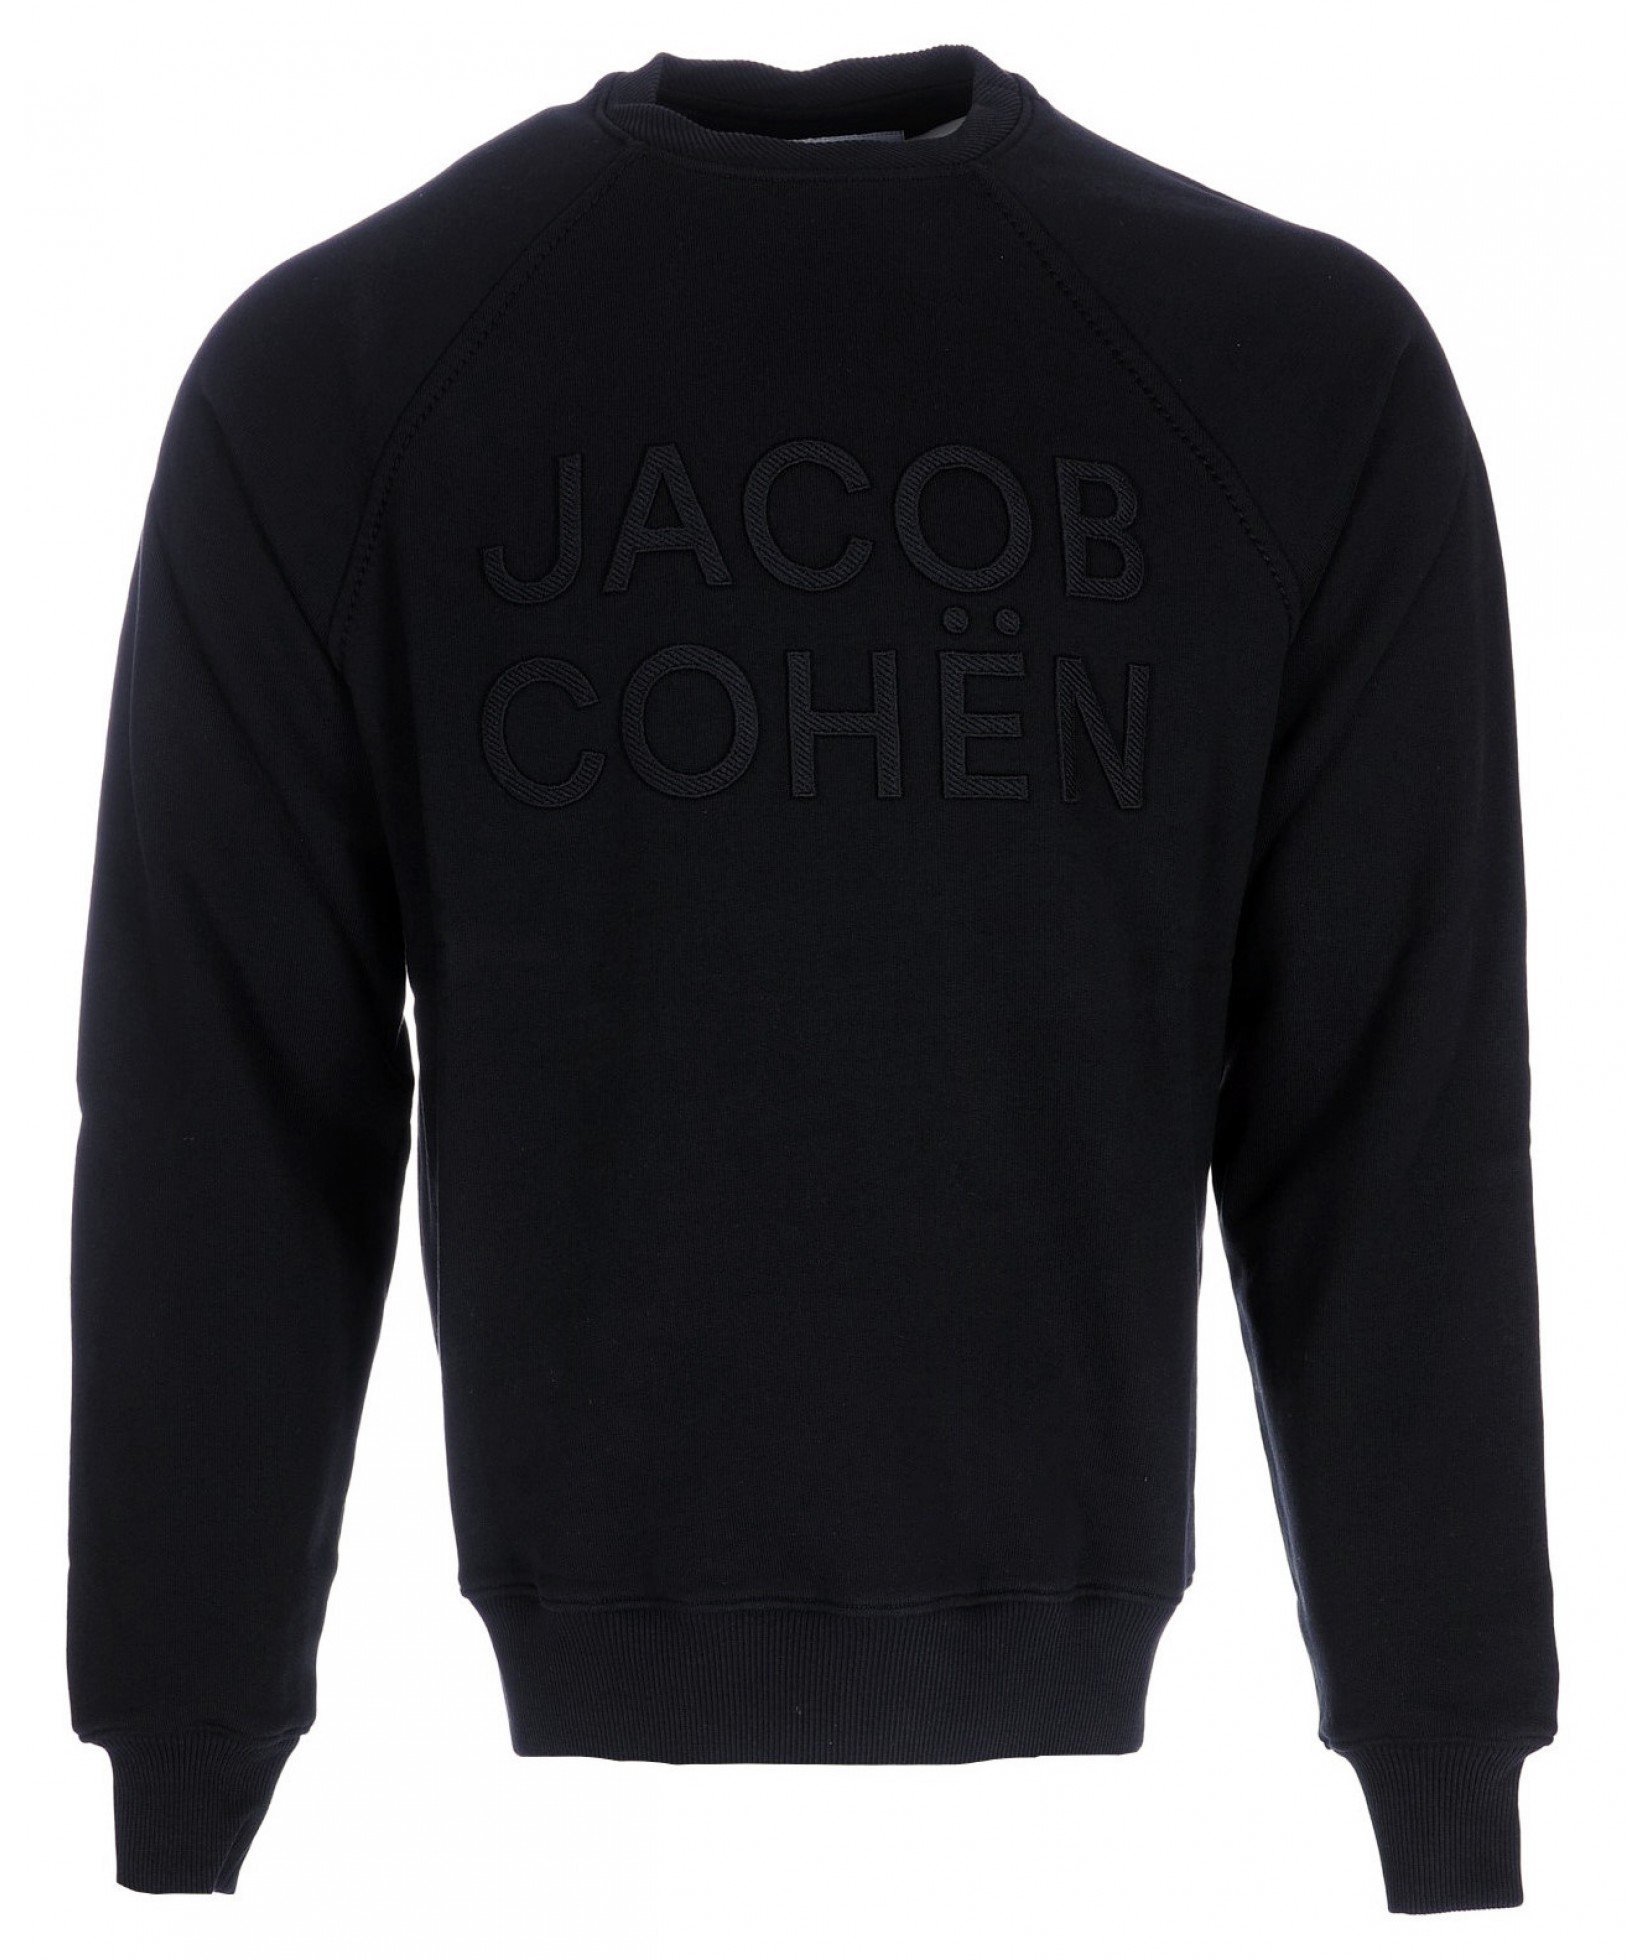 Jacob Cohën sweater black (34847)